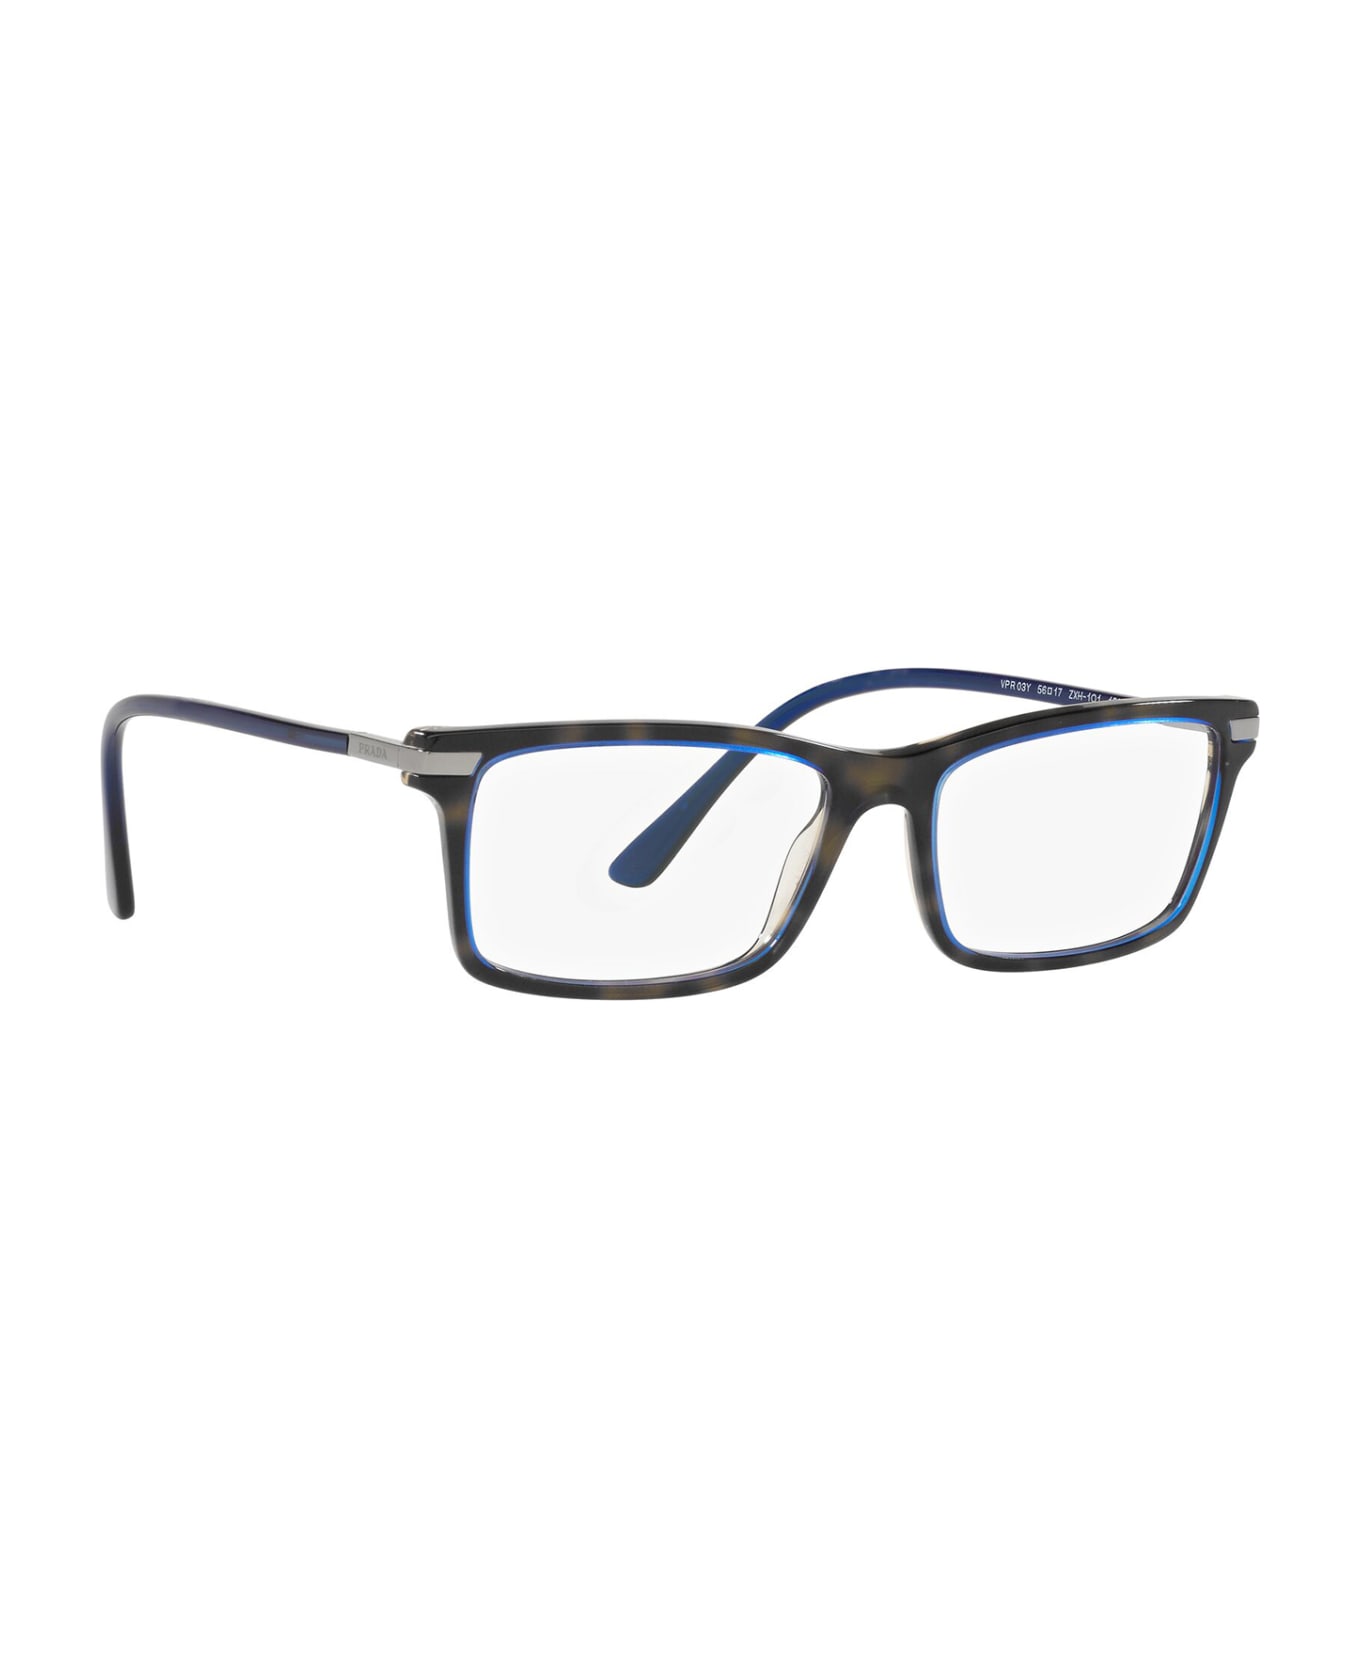 Prada Eyewear Pr 03yv Denim Tortoise Glasses - Denim Tortoise アイウェア